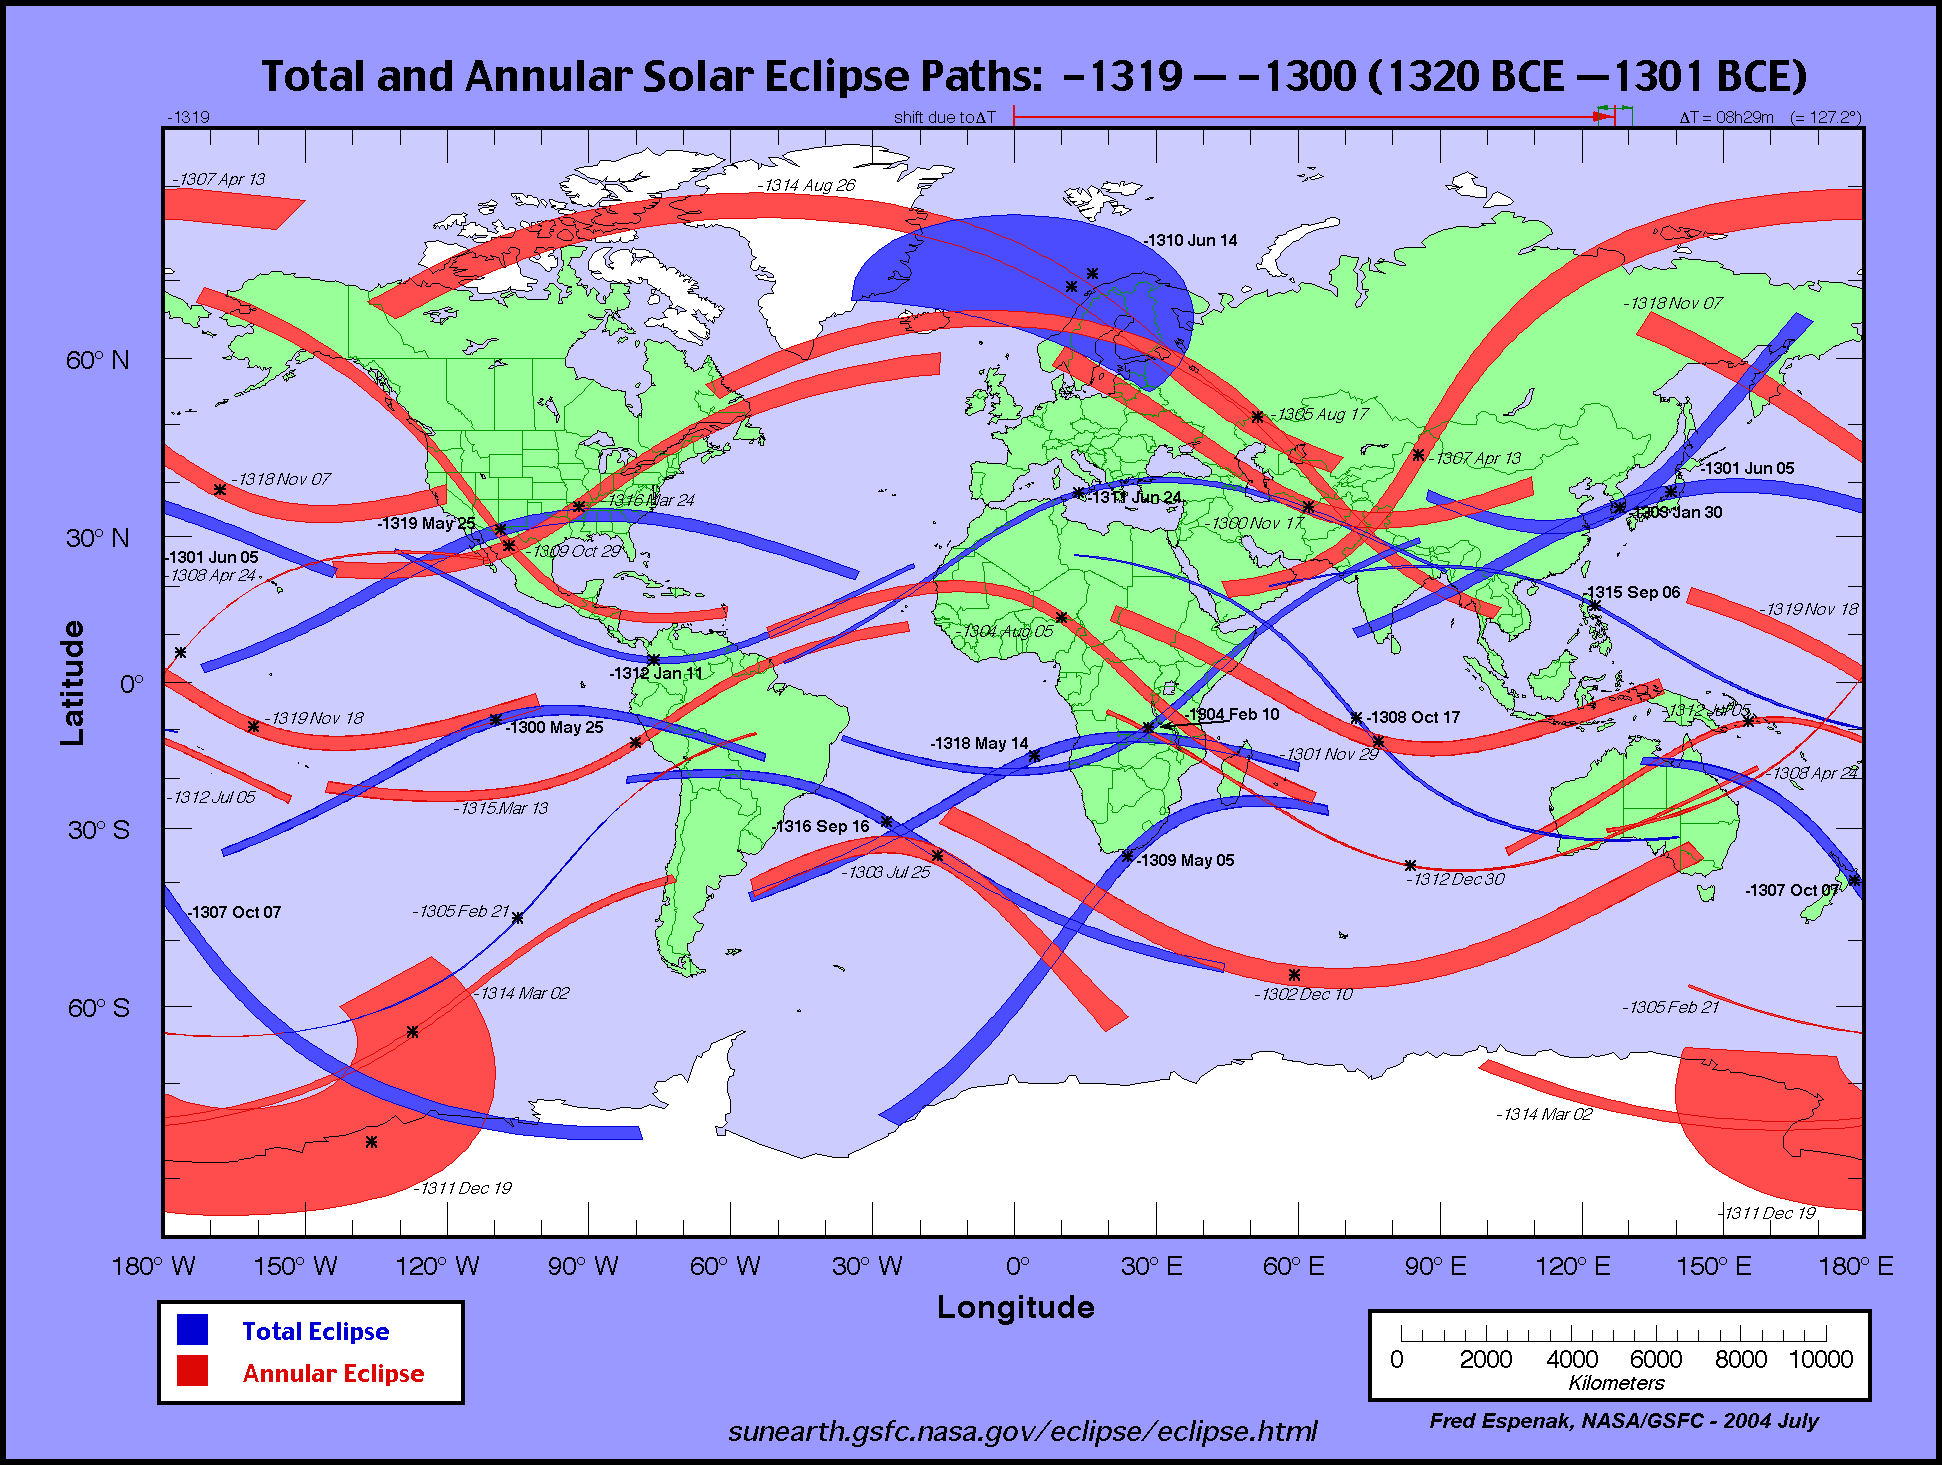 http://eclipse.gsfc.nasa.gov/SEatlas/SEatlas-2/SEatlas-1319.GIF